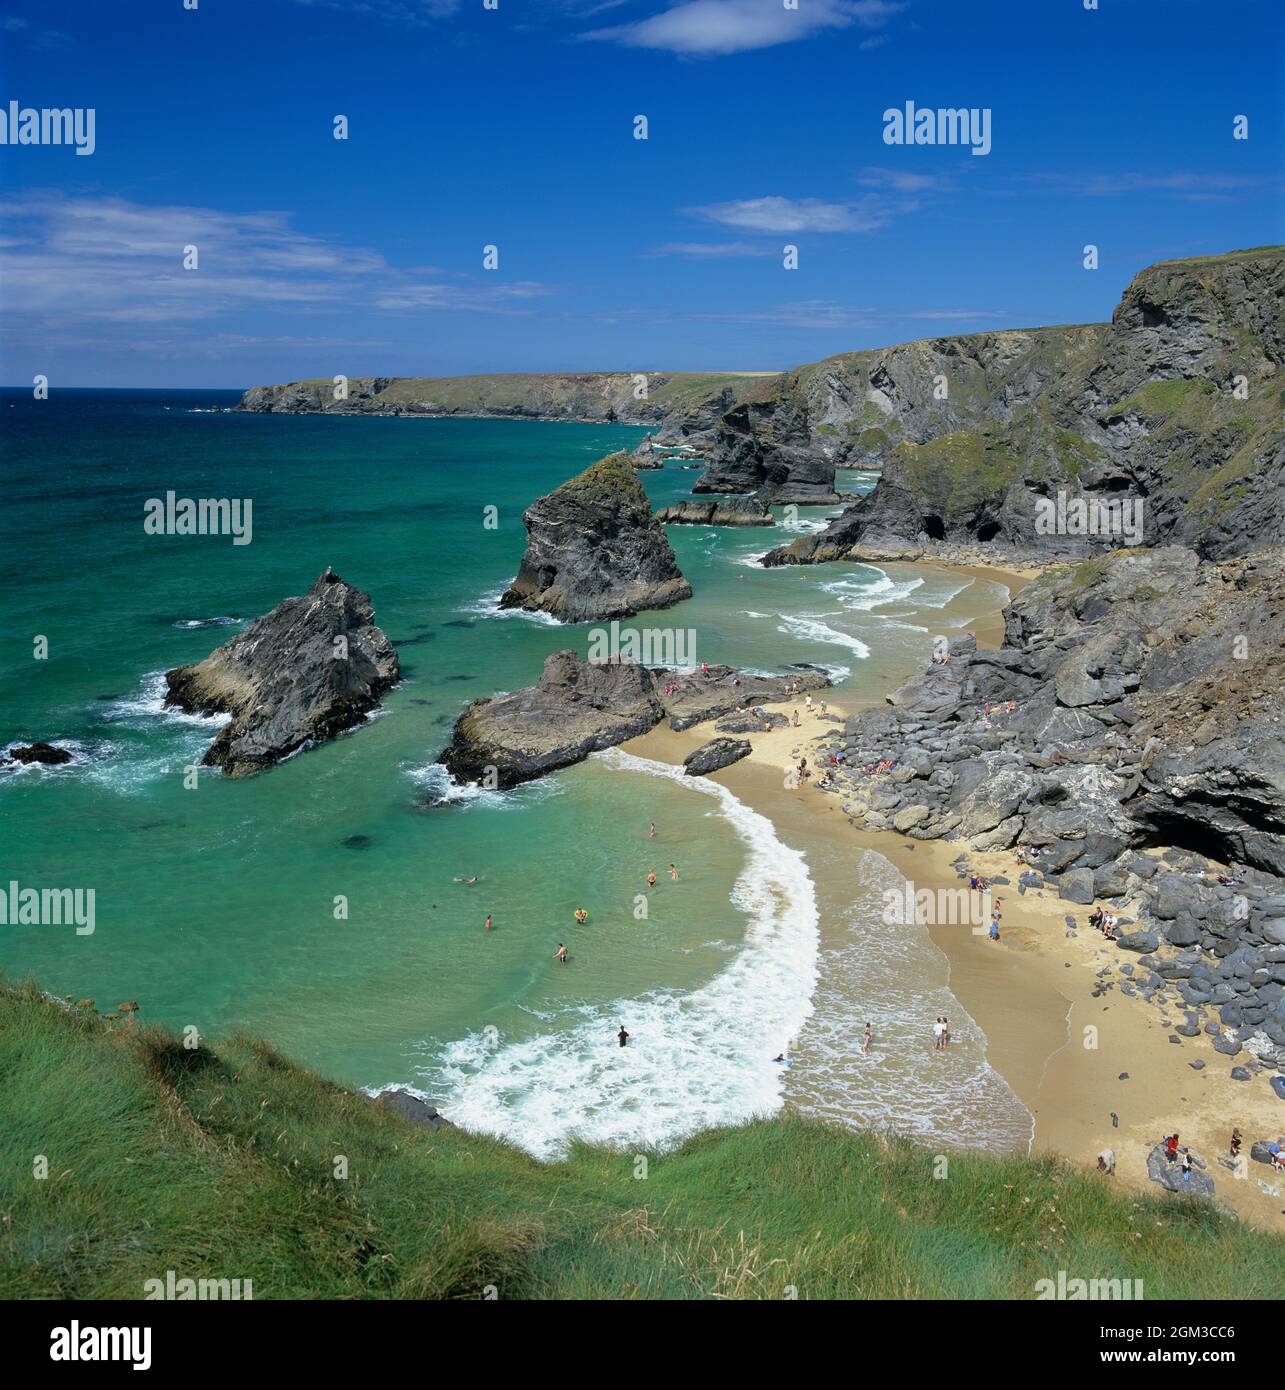 La spiaggia e la costa di Bedruthan Steps sulla costa nord della Cornovaglia, nei pressi di Newquay, Cornovaglia, Inghilterra, Regno Unito, Europa Foto Stock